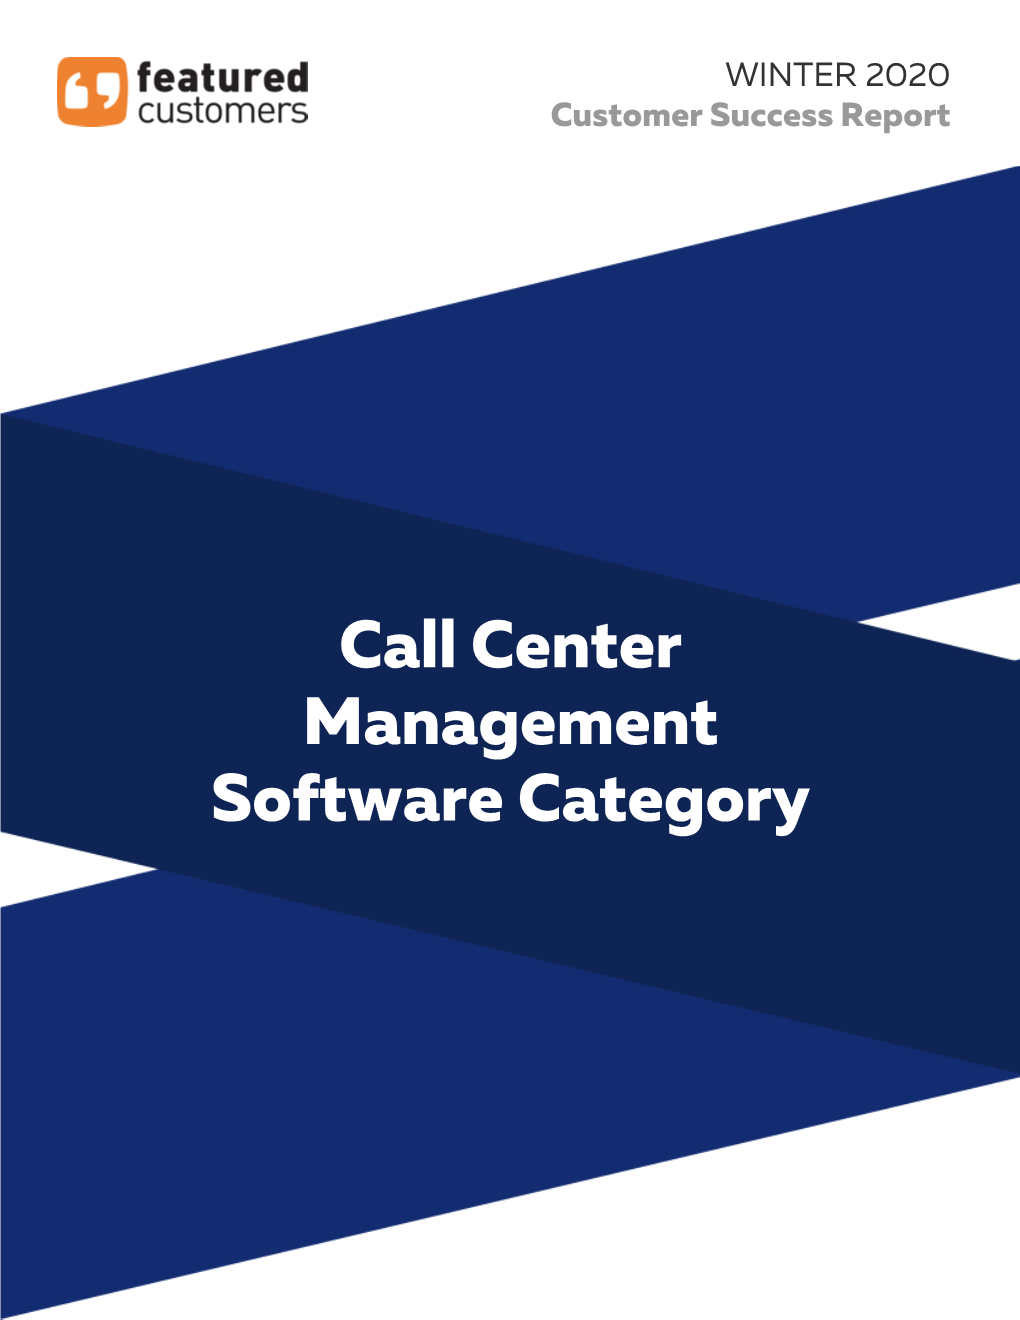 Call Center Management Software Category Call Center Management Software Category